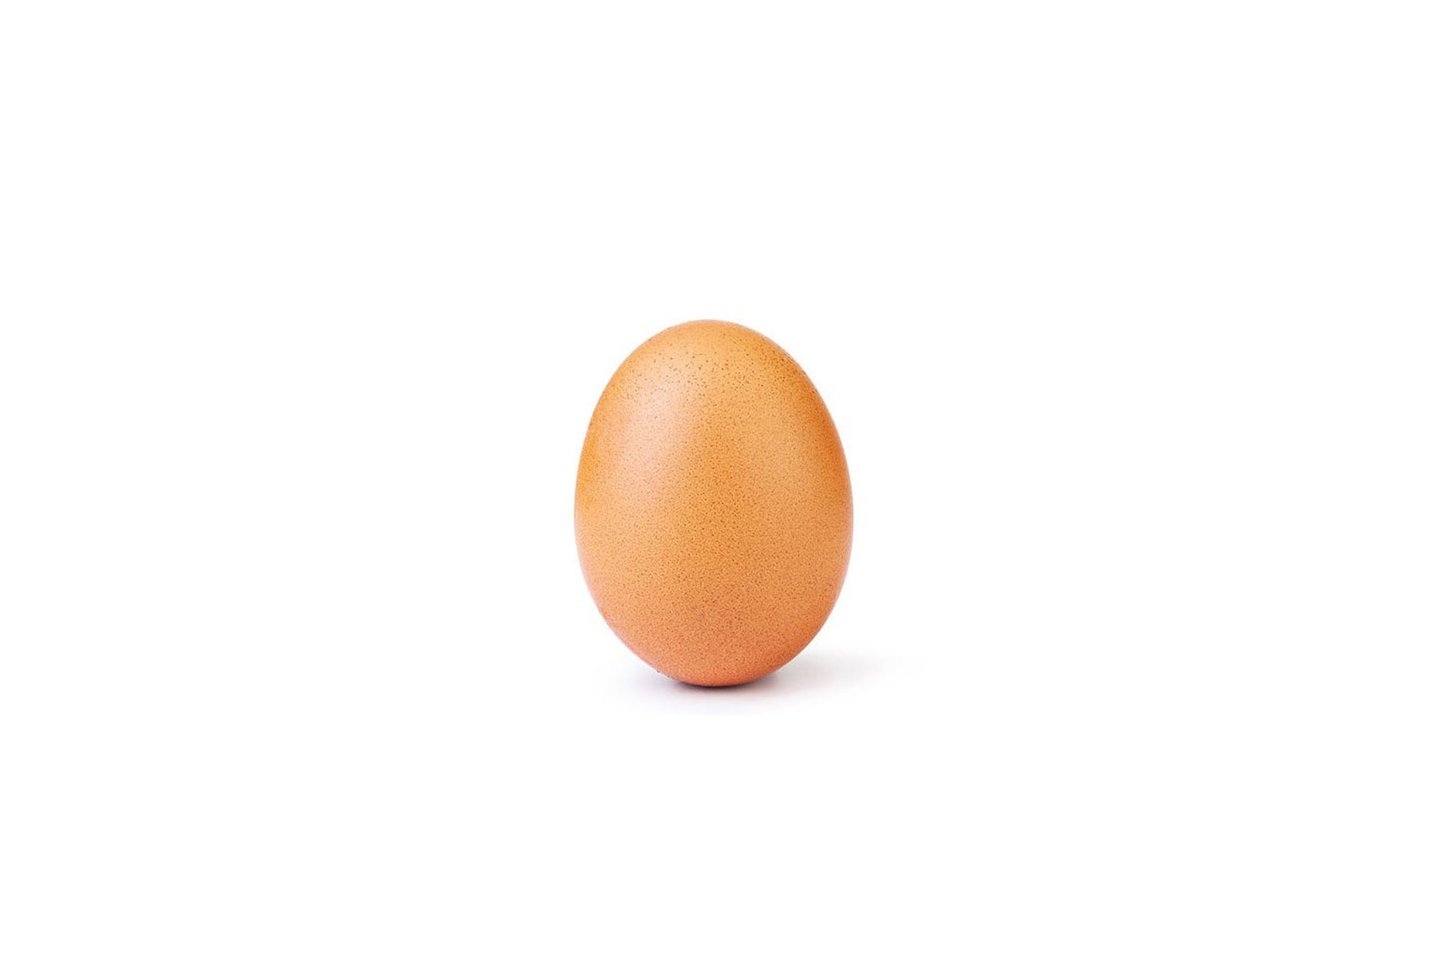  Pirmadienio vidurdienį šią nuotrauką kaip mėgstamą jau buvo pažymėję daugiau nei 25 milijonai vartotojų.<br> Egg Gang nuotr.